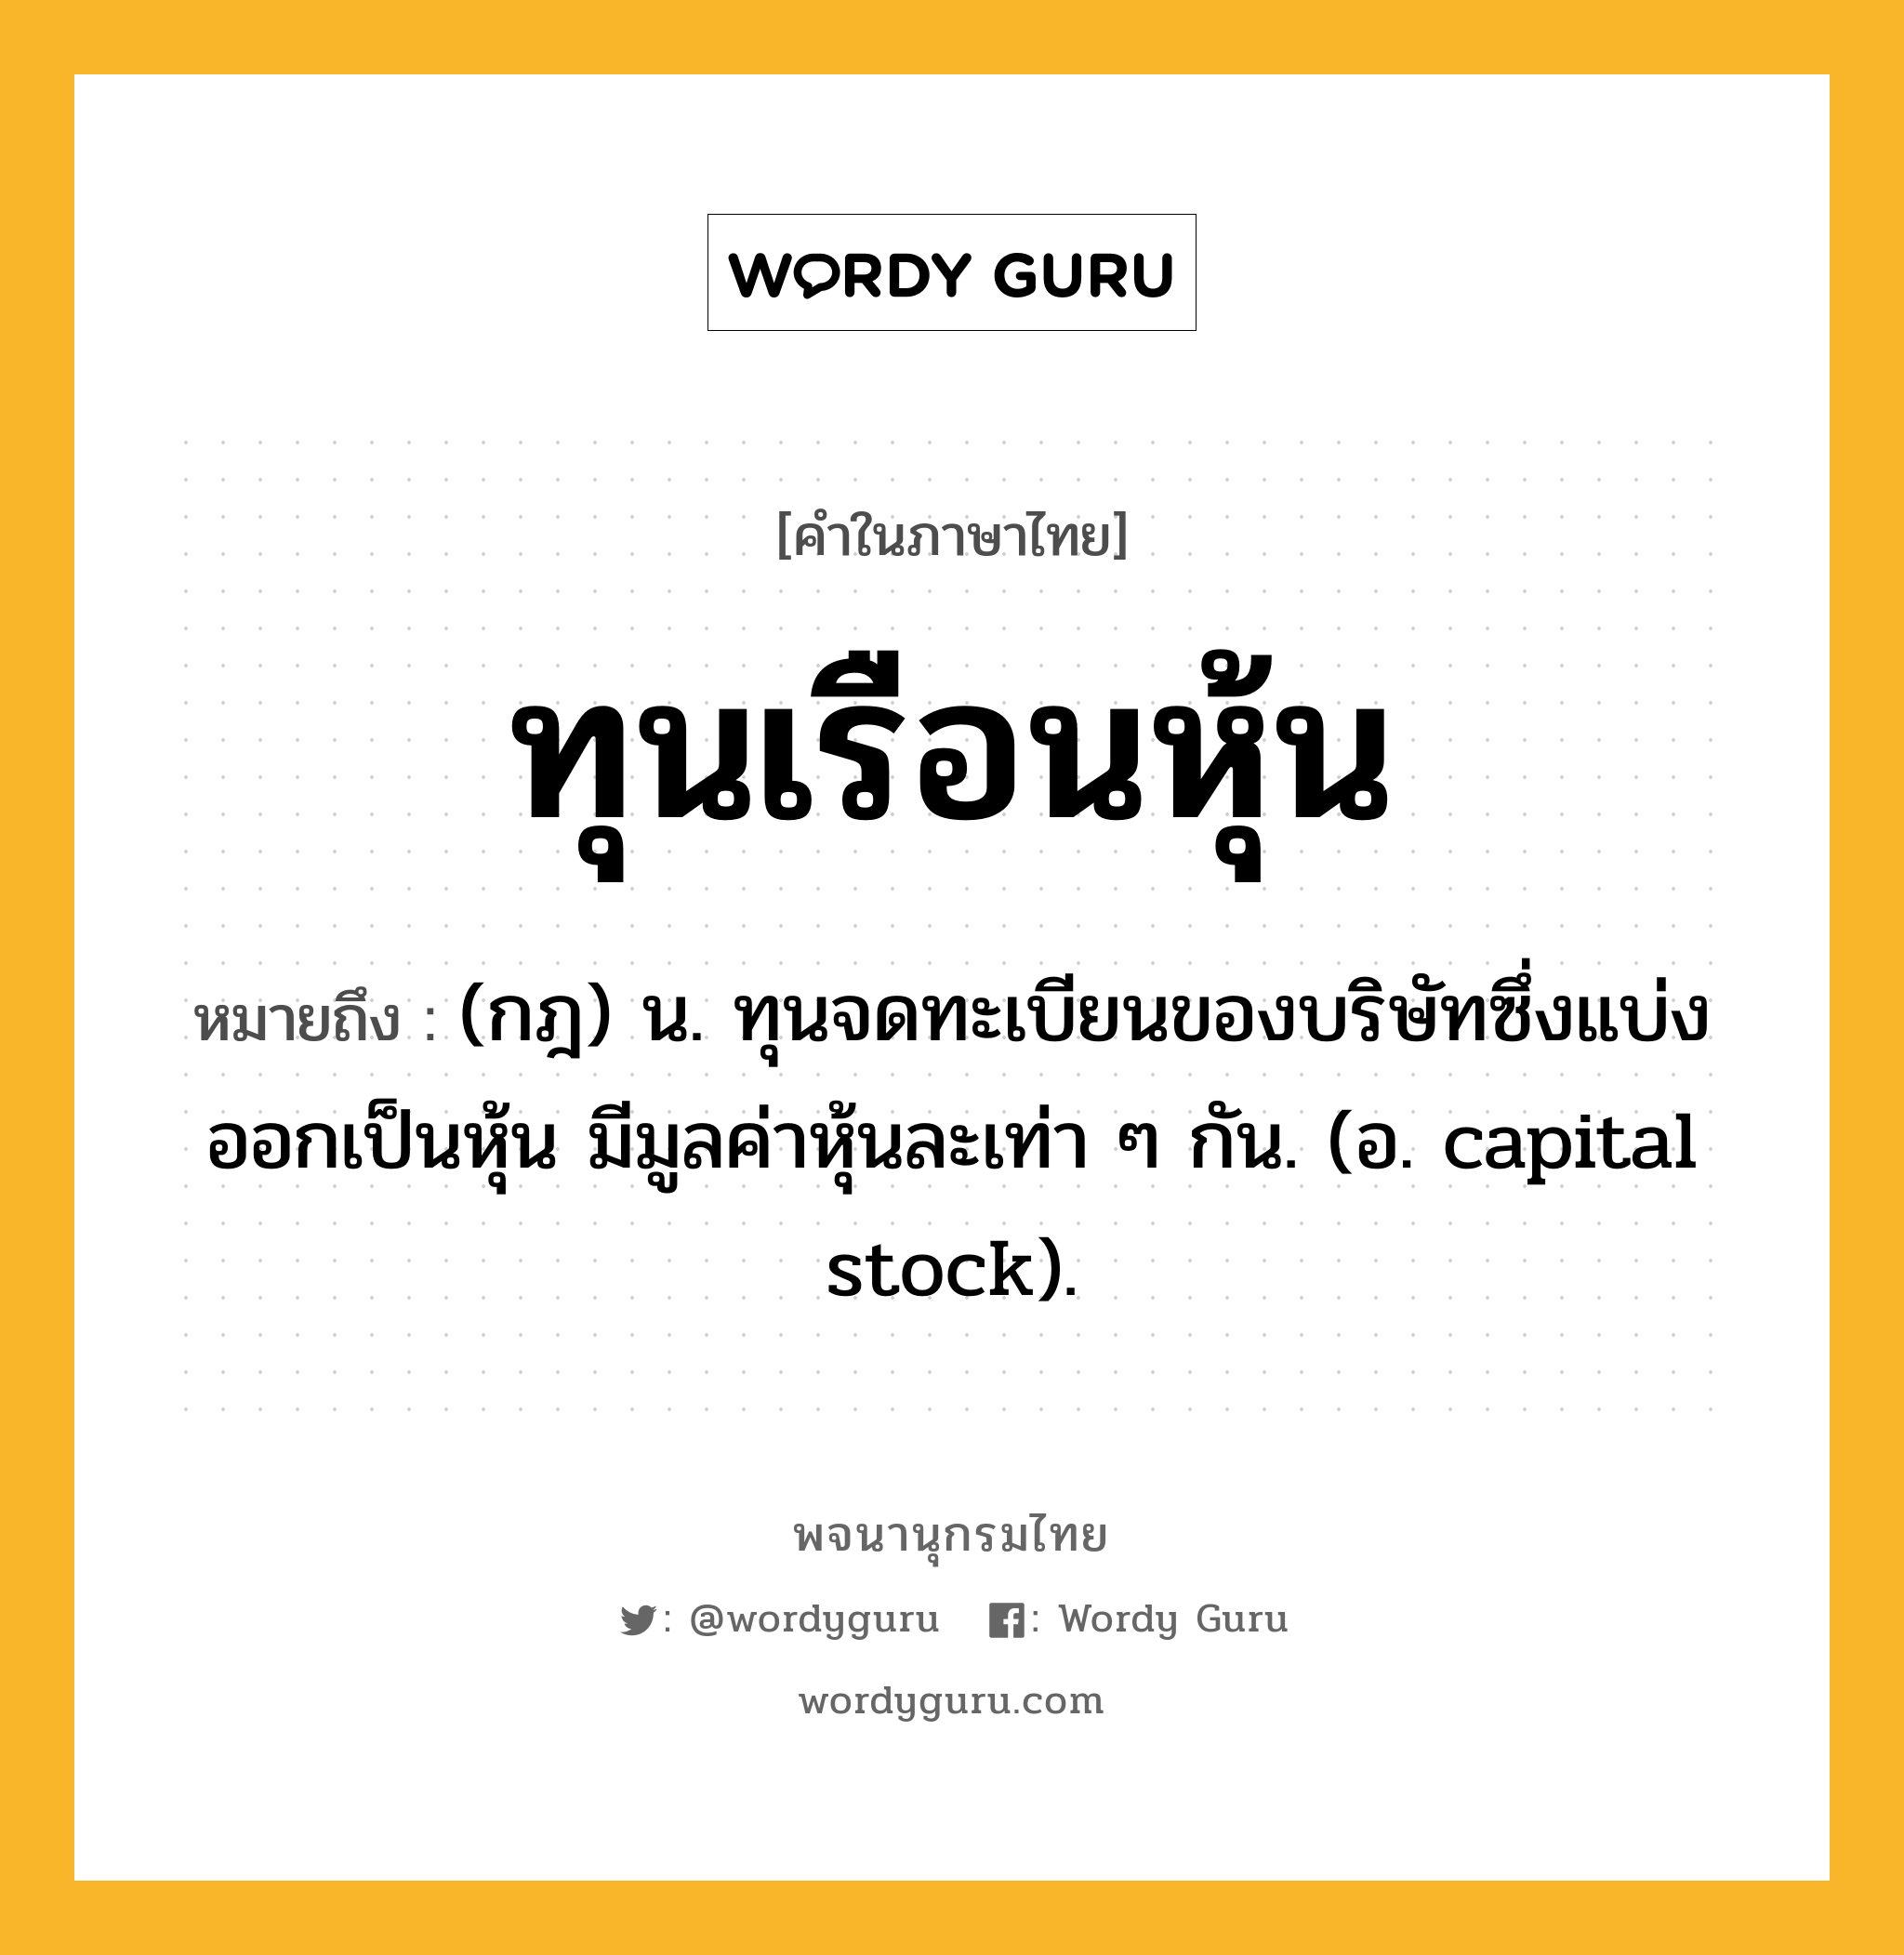 ทุนเรือนหุ้น ความหมาย หมายถึงอะไร?, คำในภาษาไทย ทุนเรือนหุ้น หมายถึง (กฎ) น. ทุนจดทะเบียนของบริษัทซึ่งแบ่งออกเป็นหุ้น มีมูลค่าหุ้นละเท่า ๆ กัน. (อ. capital stock).